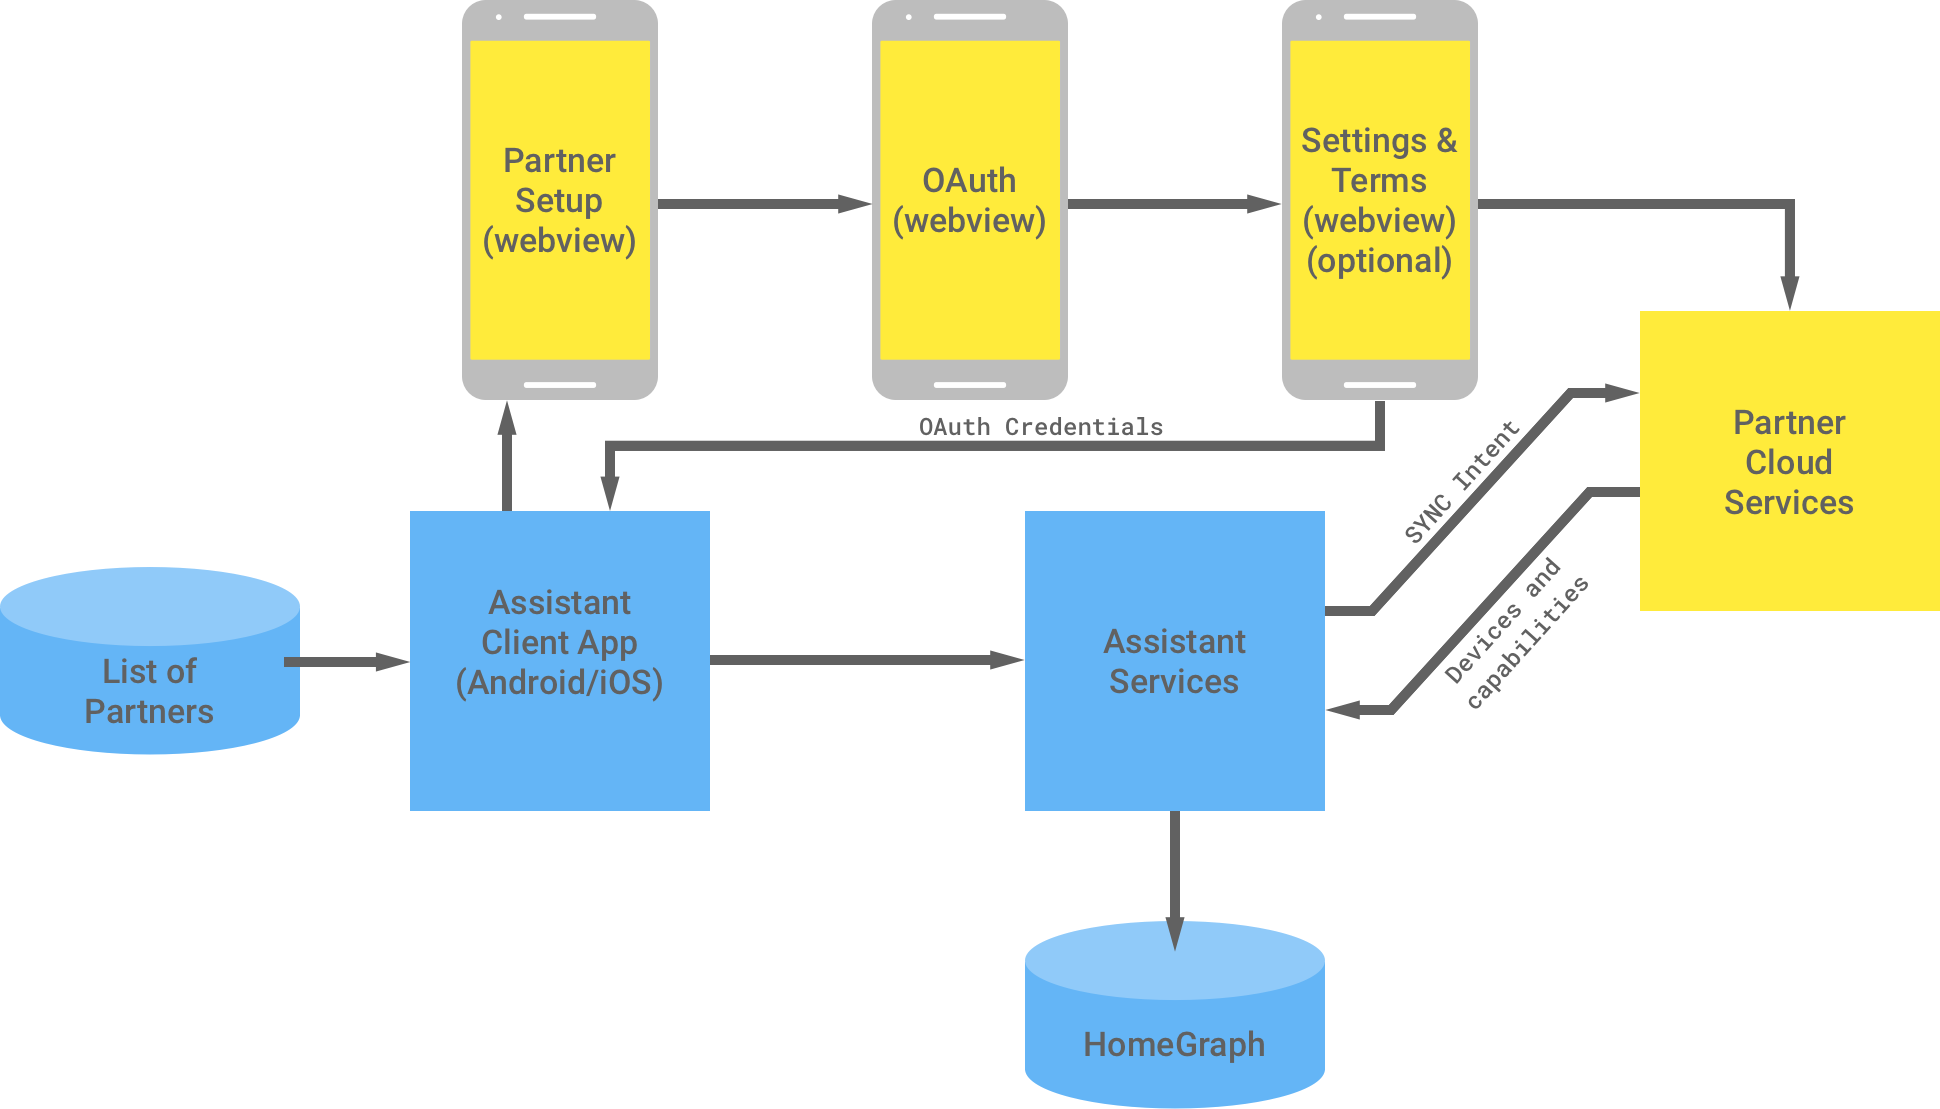 Ta ilustracja przedstawia interakcję między infrastrukturą Google i infrastrukturą partnera. W infrastrukturze Google znajduje się lista partnerów, którzy mają dostęp do aplikacji klienckiej Asystenta, a potem następuje przejście do infrastruktury partnera, aby umożliwić uwierzytelnianie OAuth. Uwierzytelnianie OAuth po stronie partnera obejmuje komponent WebView partnera, komponent WebView protokołu OAuth, opcjonalne ustawienia i warunki oraz usługi w chmurze partnera. Następnie infrastruktura partnera zwraca dane logowania OAuth do aplikacji klienckiej Asystenta. Usługi w chmurze partnera wysyłają do usług Asystenta dostępne urządzenia i możliwości, które następnie zapisują informacje na głównym wykresie.